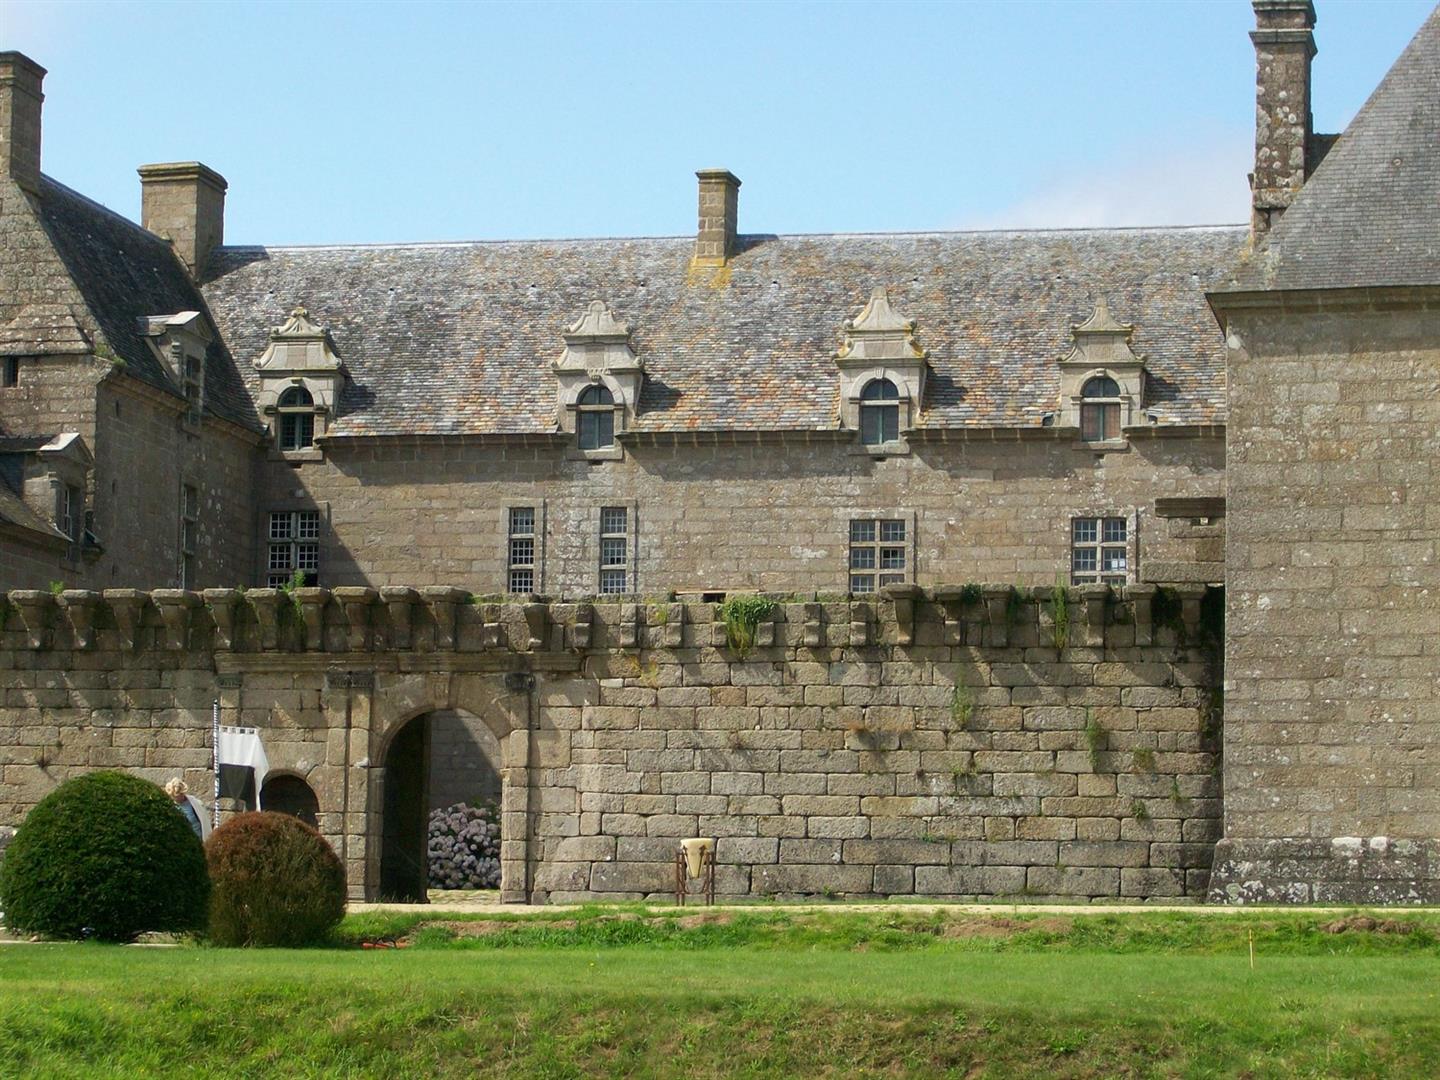 Château de Kergroadez